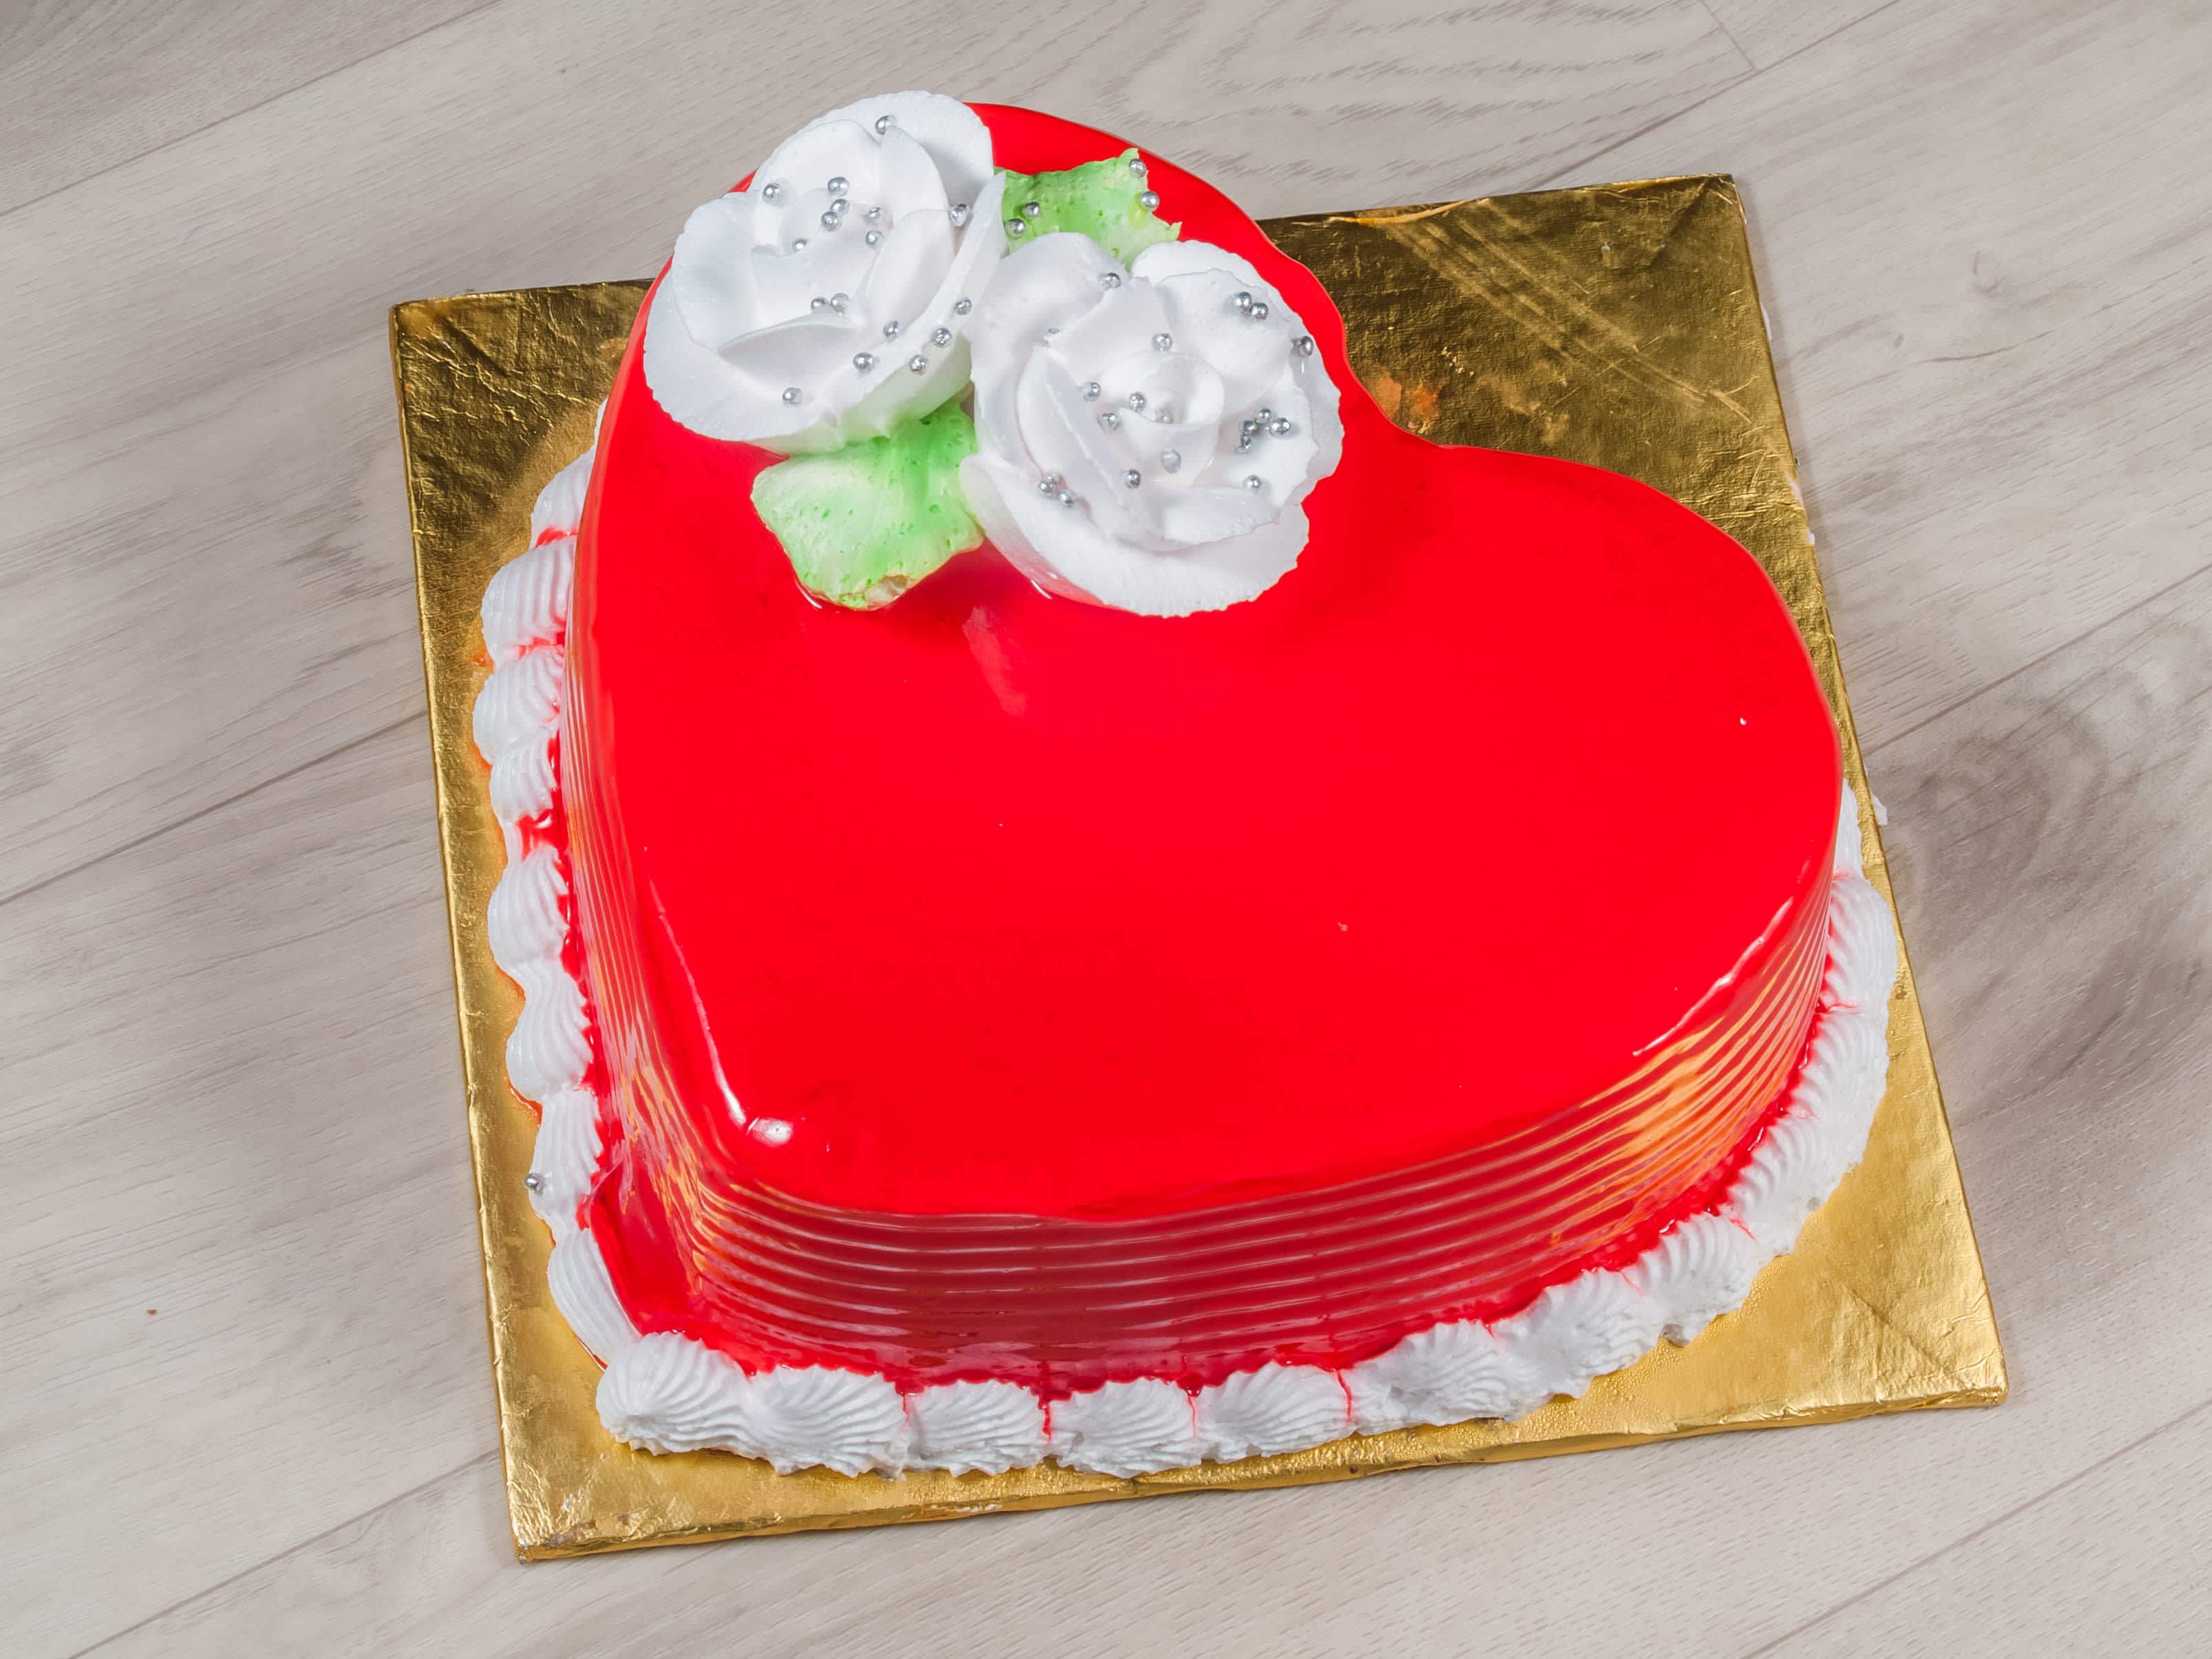 cake ##anniversary ♥️🙈 #cakedecorating #cakedesign - YouTube